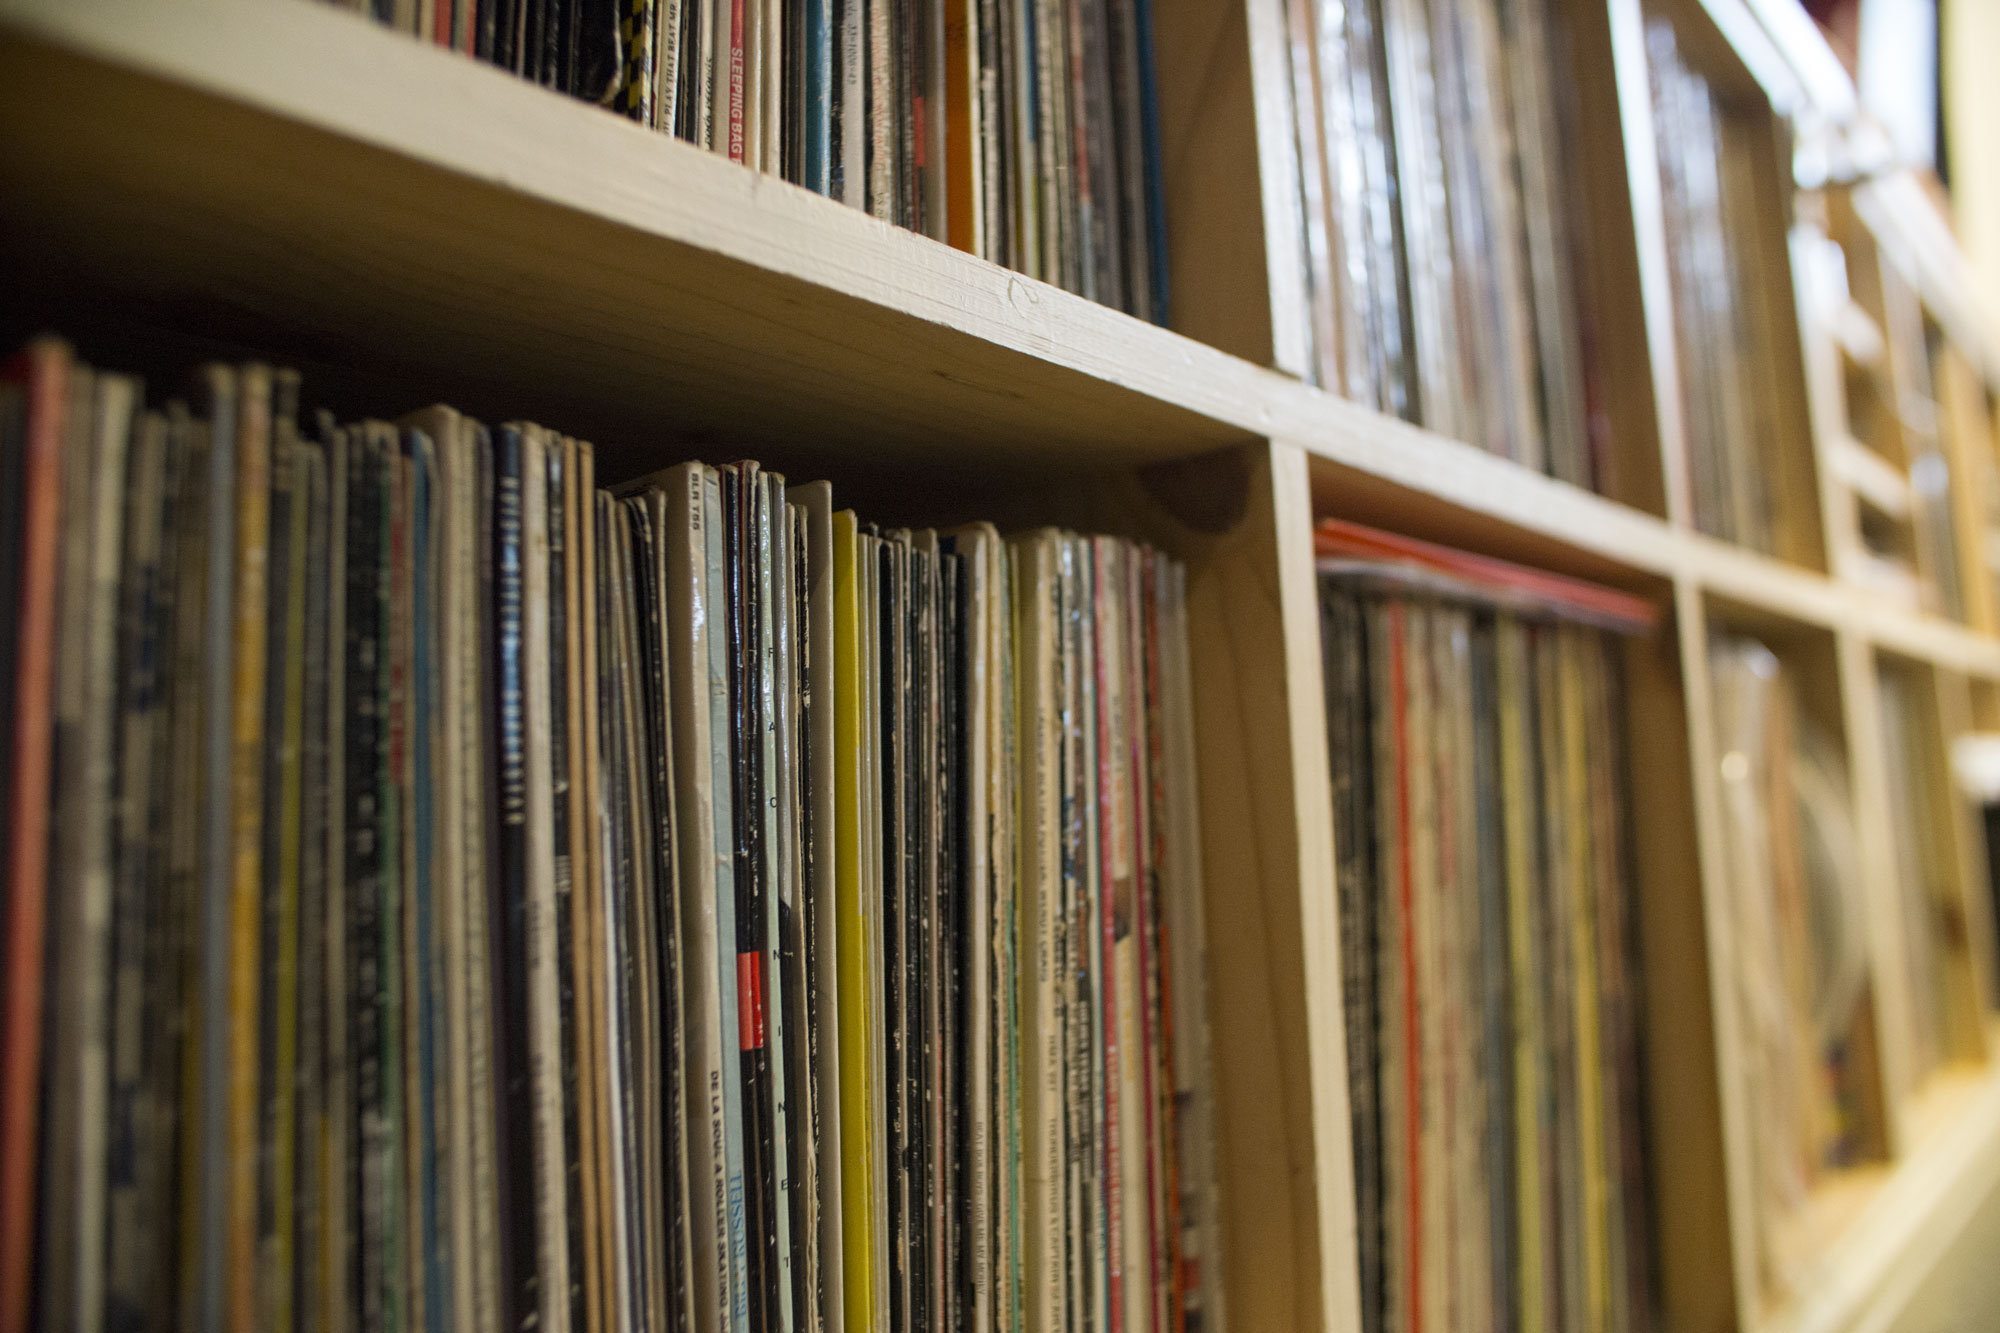 Vinyl collection shelves